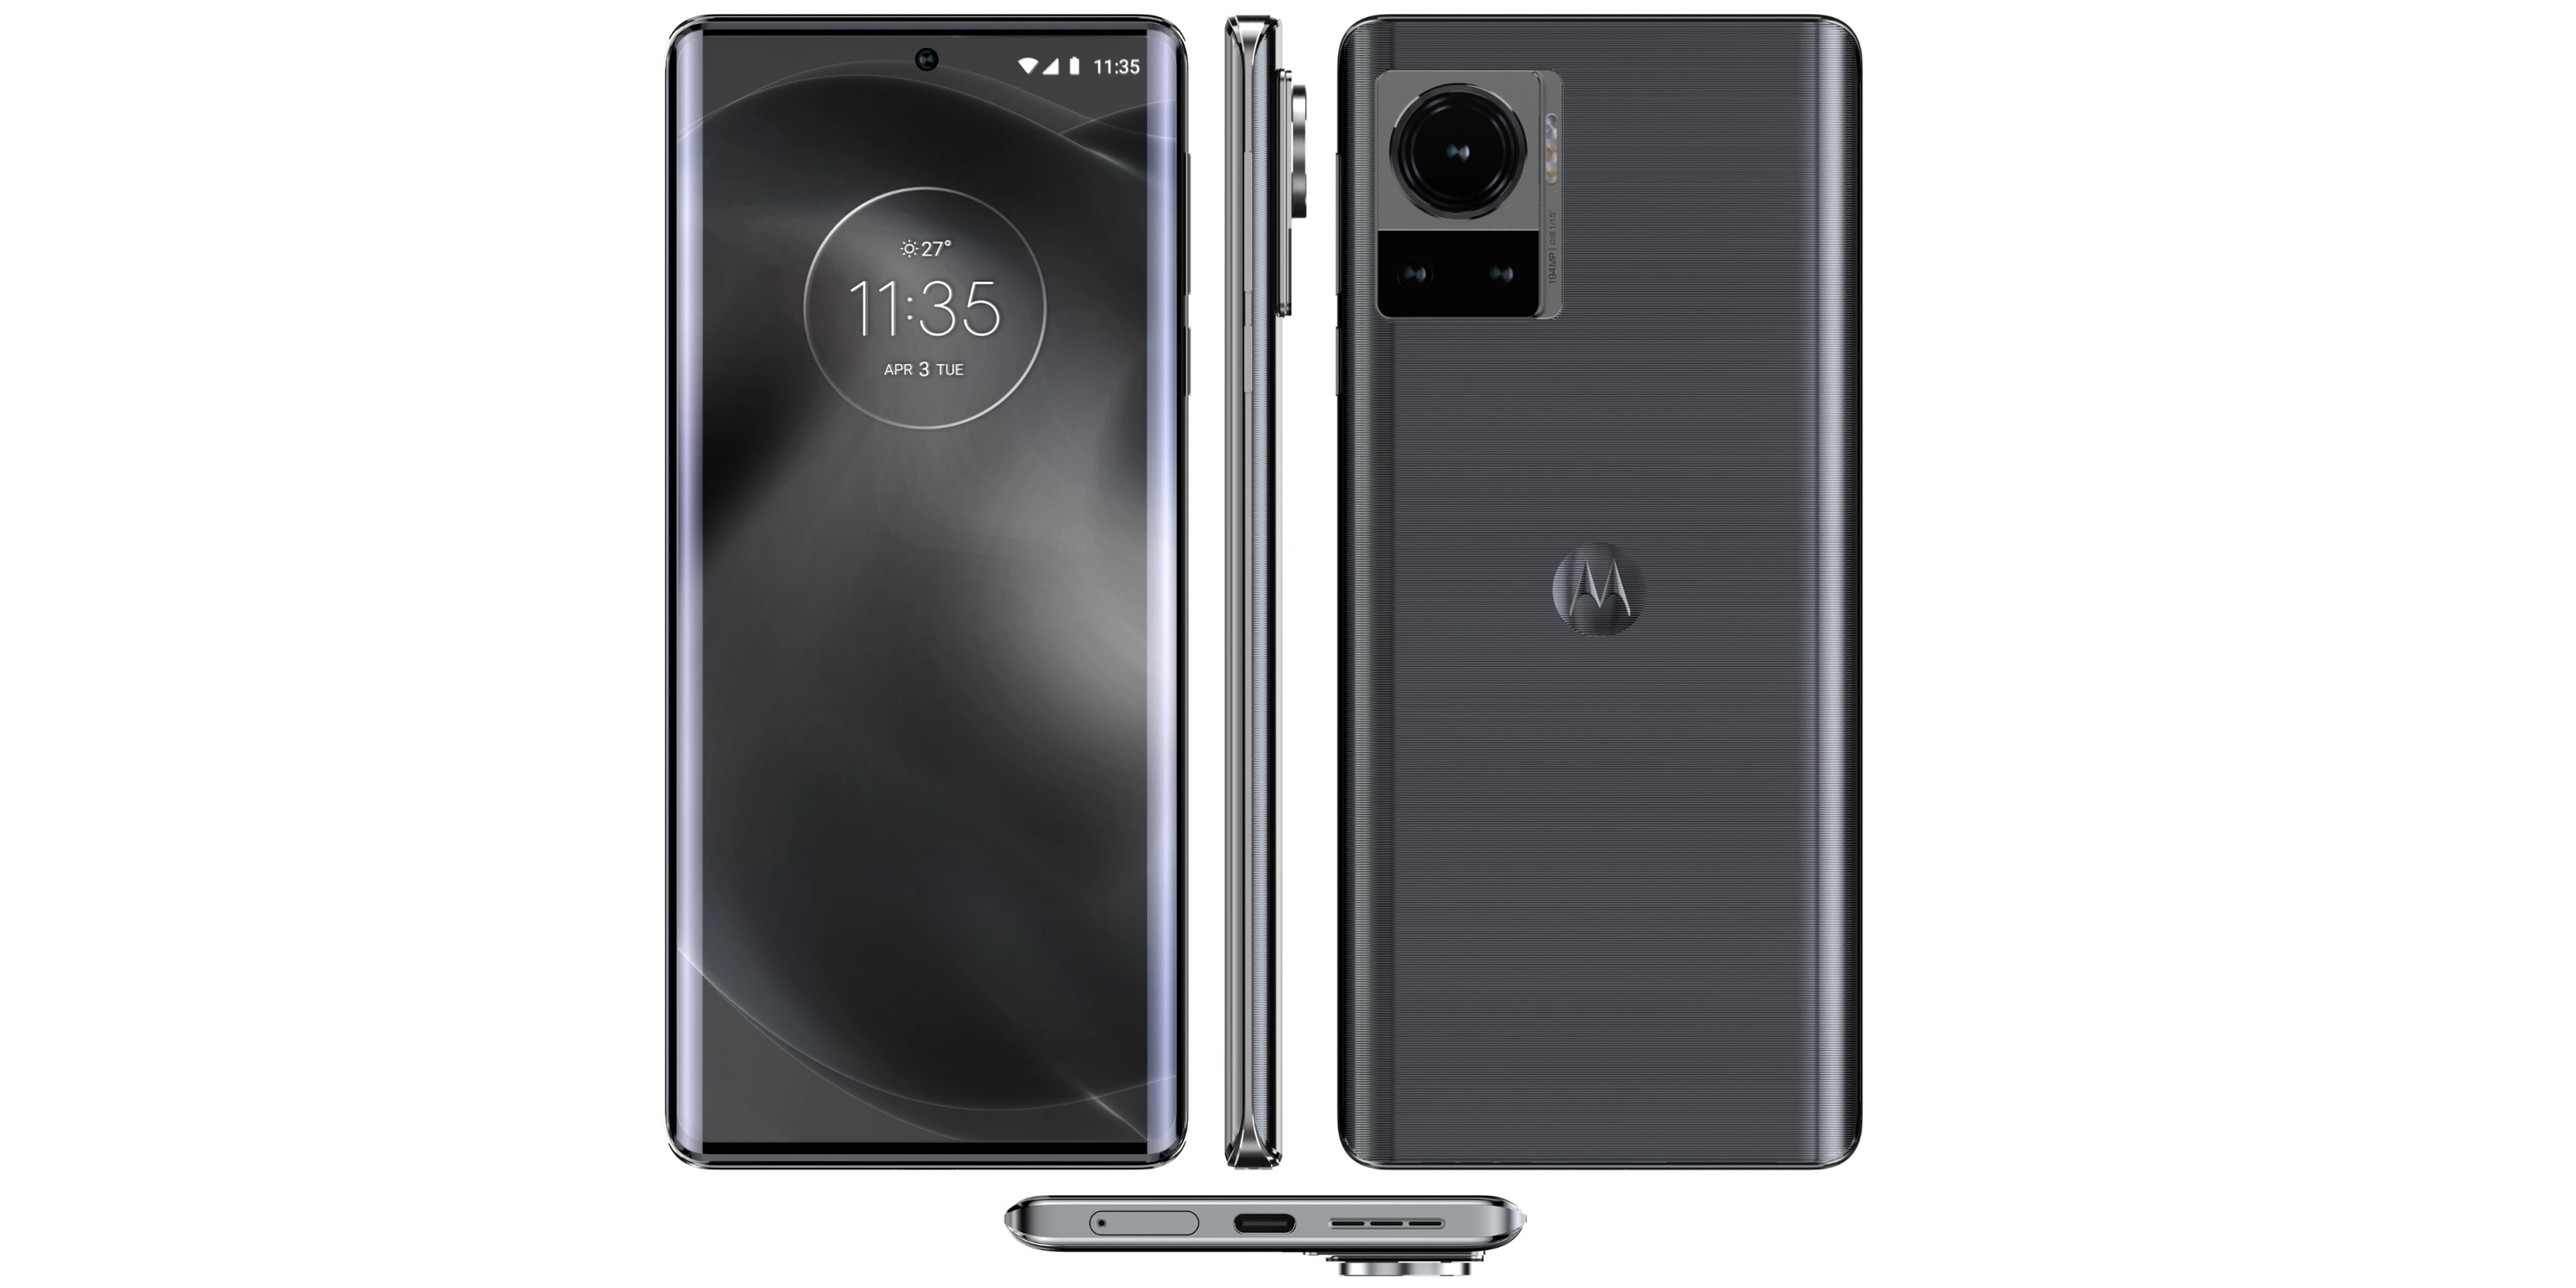 Le futur flagship de Motorola embarquera un capteur de 194 MP, un bel embonpoint sur la face arrière du téléphone